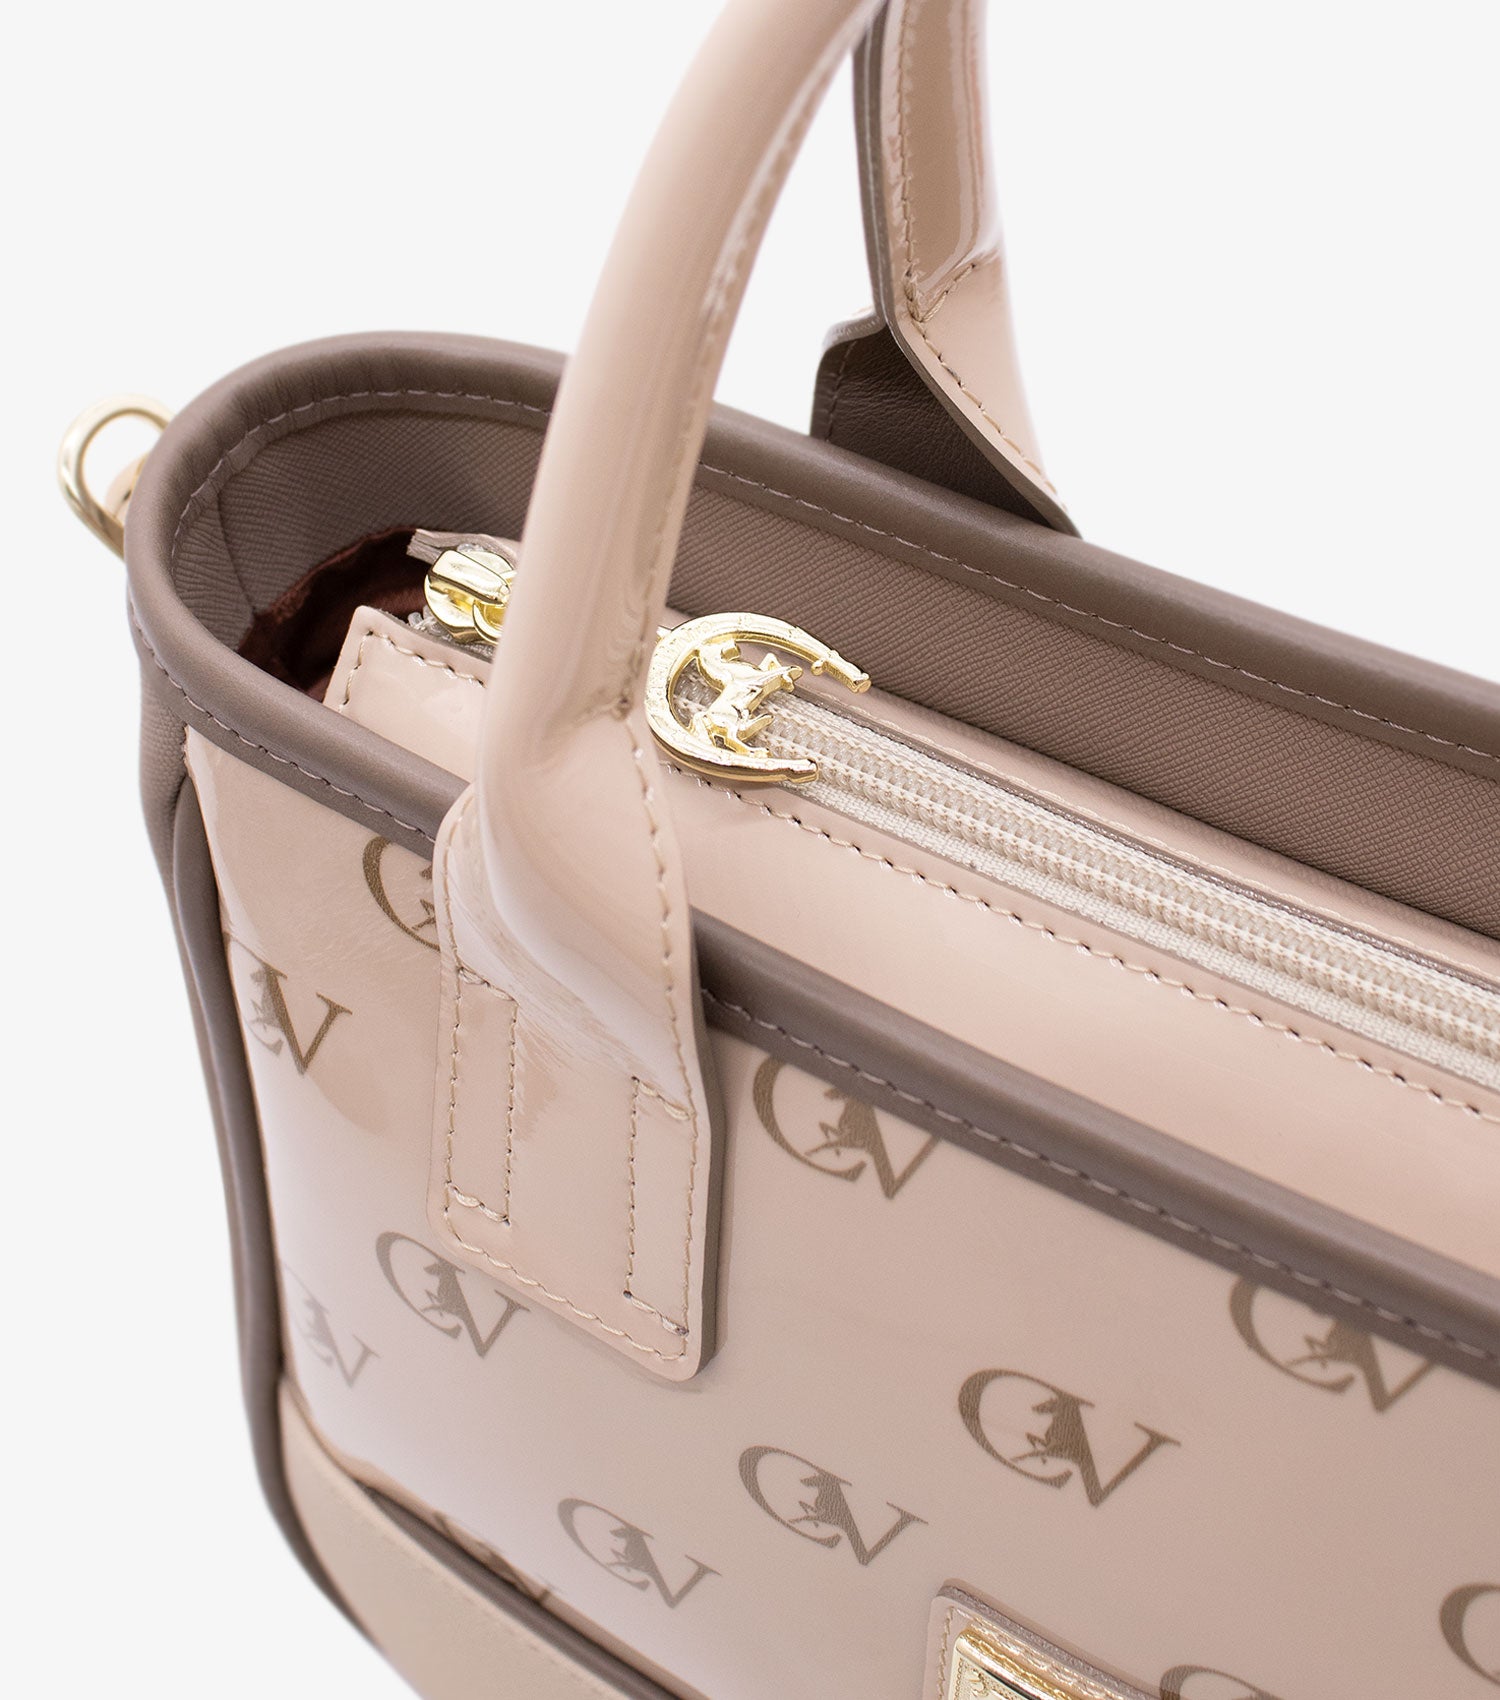 Cavalinho Signature Handbag SKU 18740507.31 #color_sand / beige